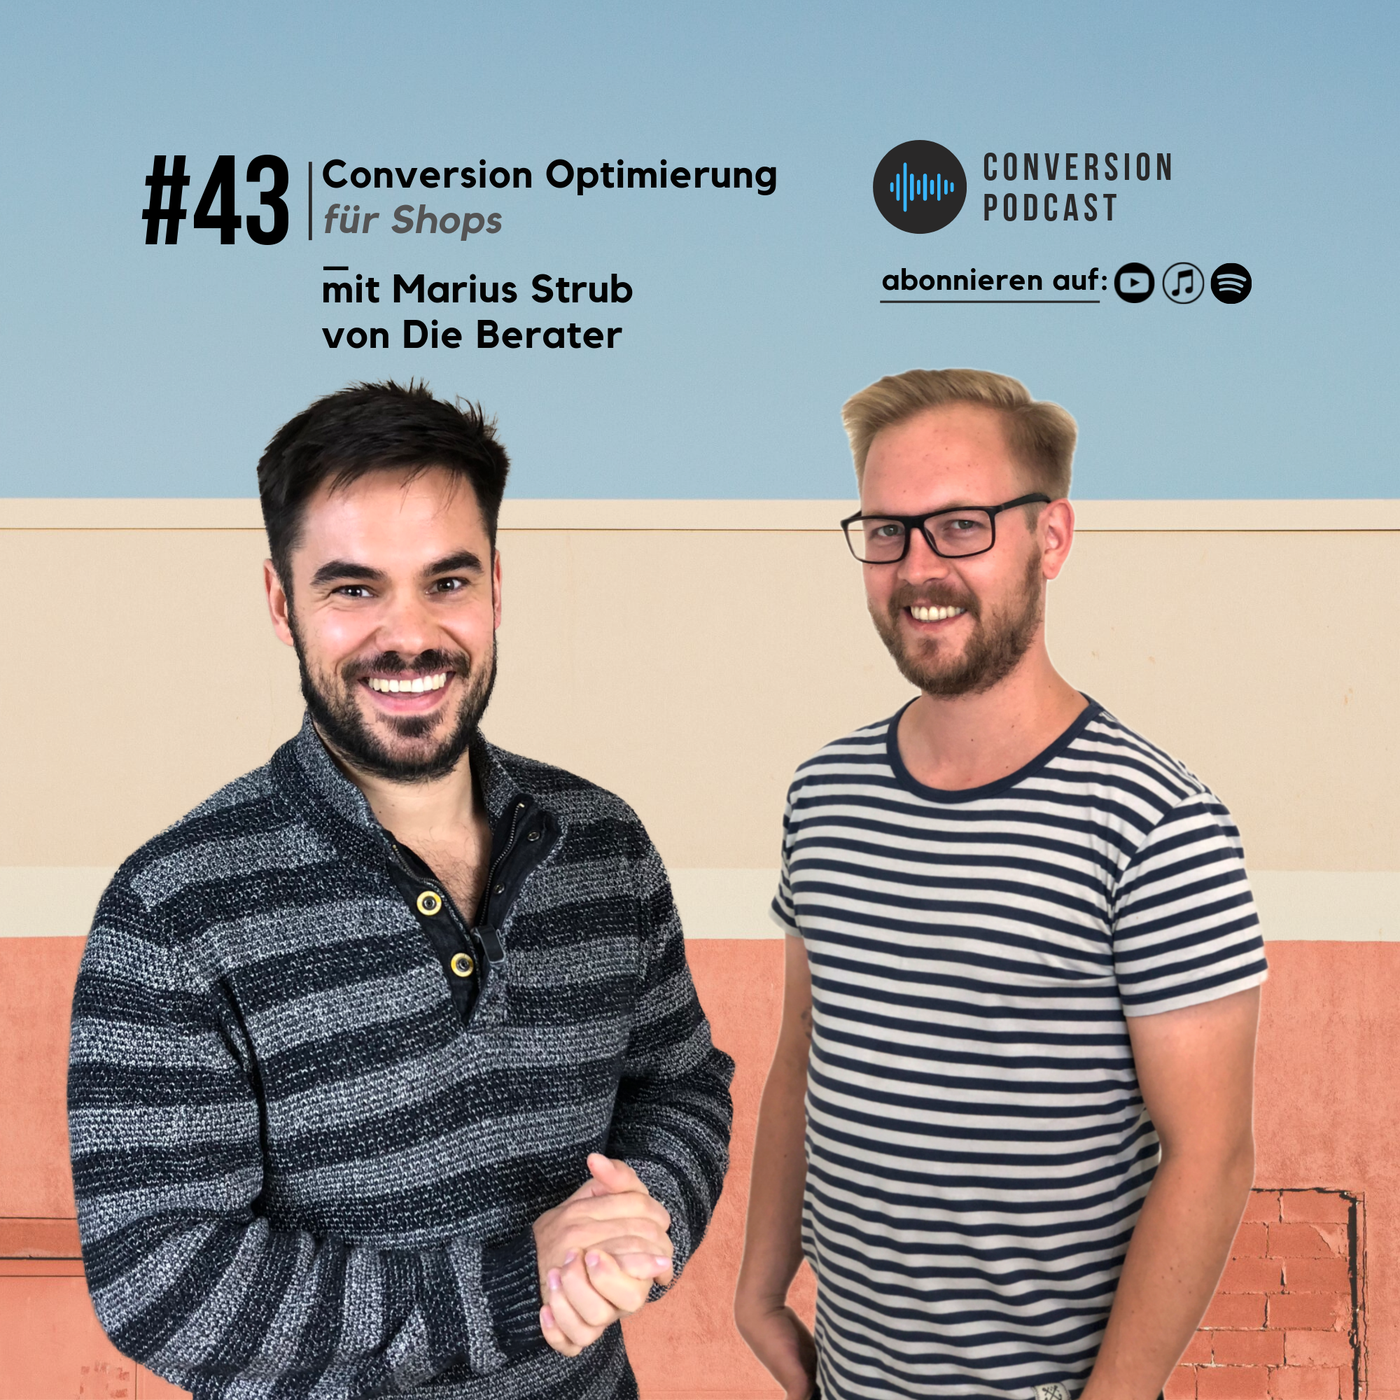 Conversion Optimierung für Online Shops – mit Marius Strub von Die Berater | #43 Conversion Podcast